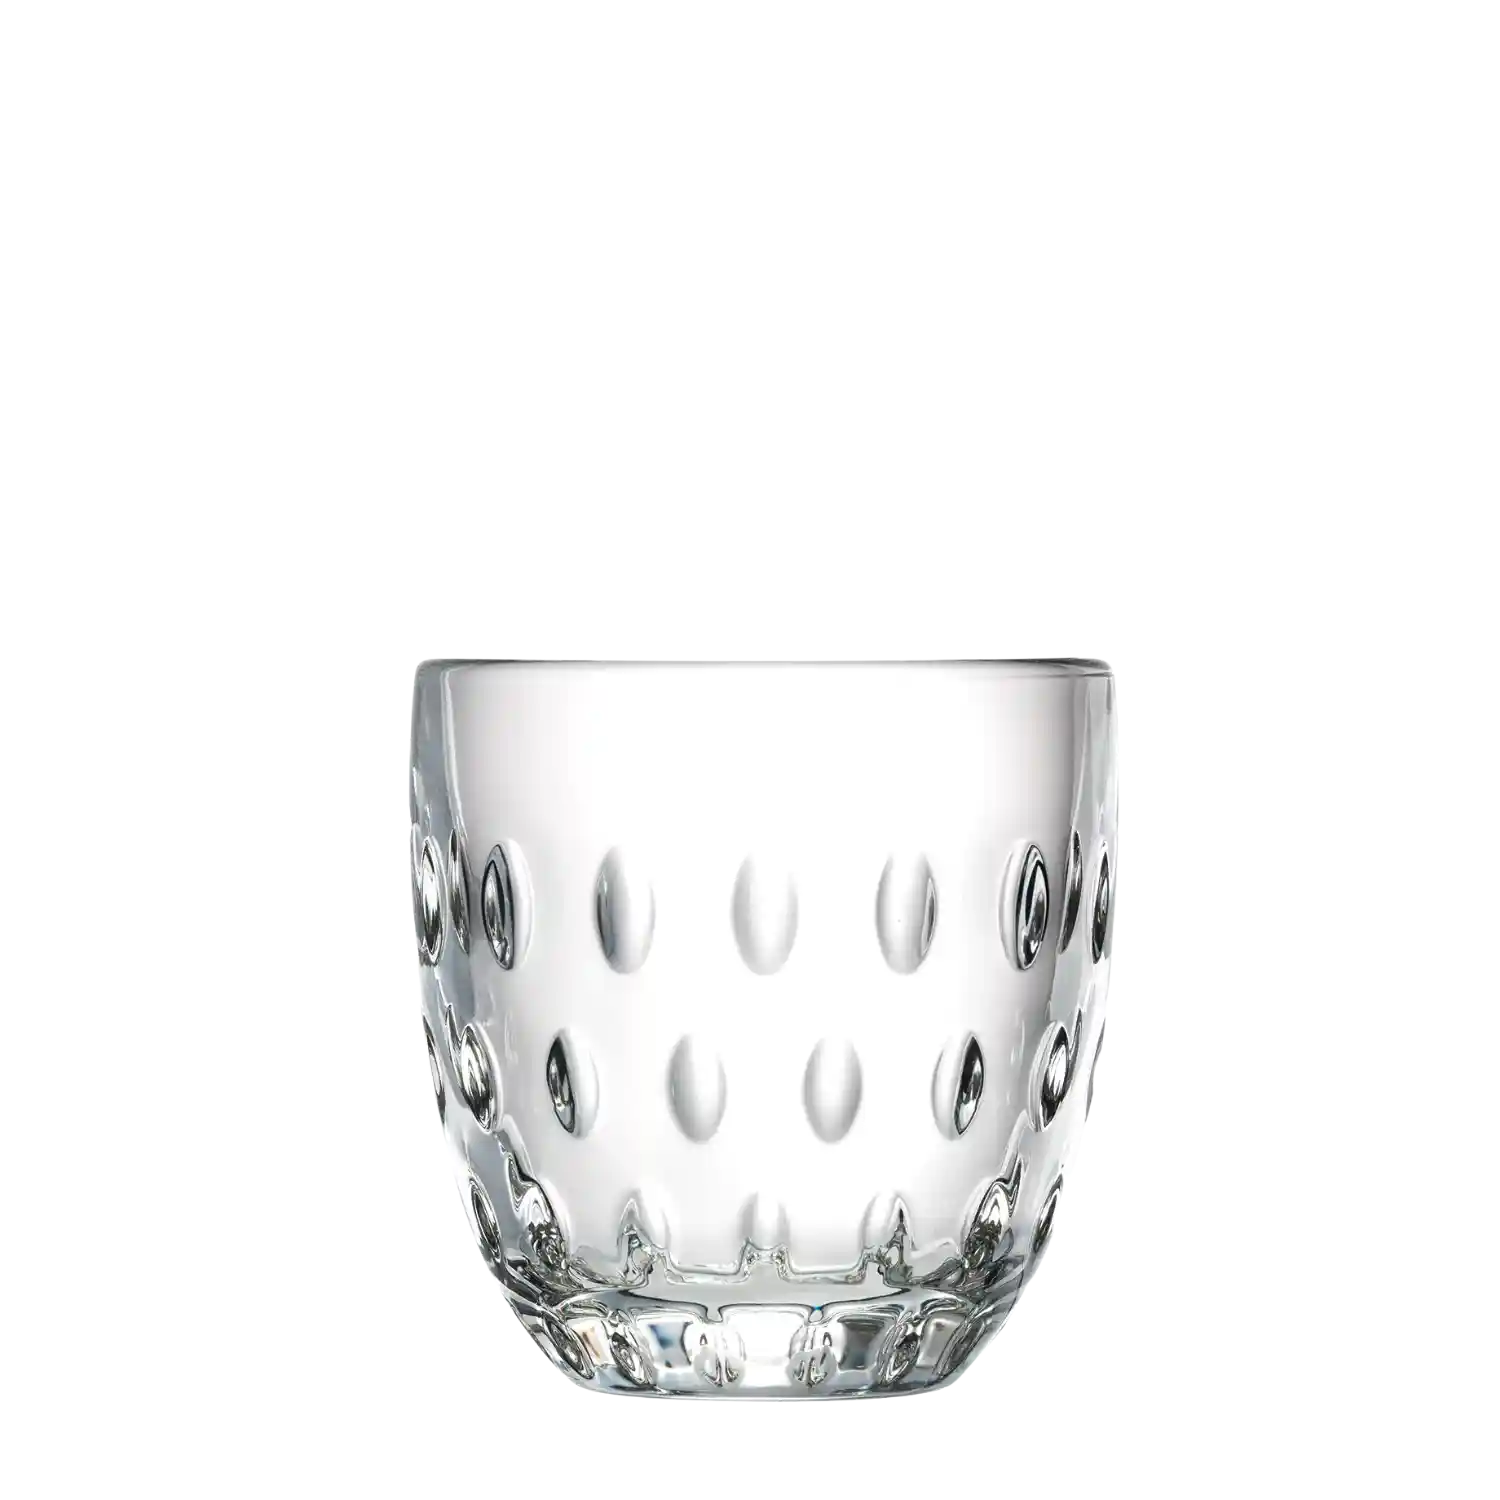 Troquet 4 glasses set